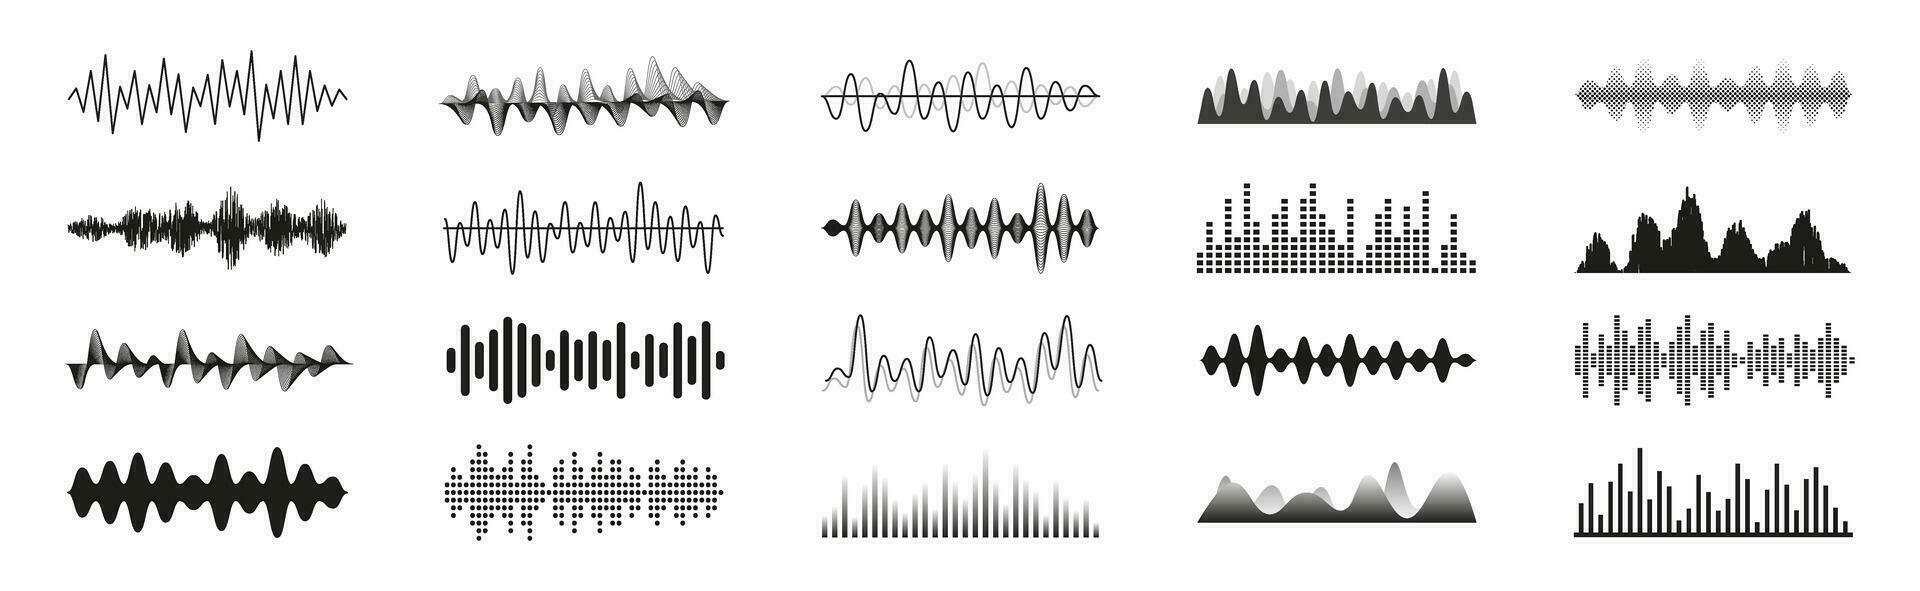 geluid golven set. audio golfvorm verzameling. vector illustratie.